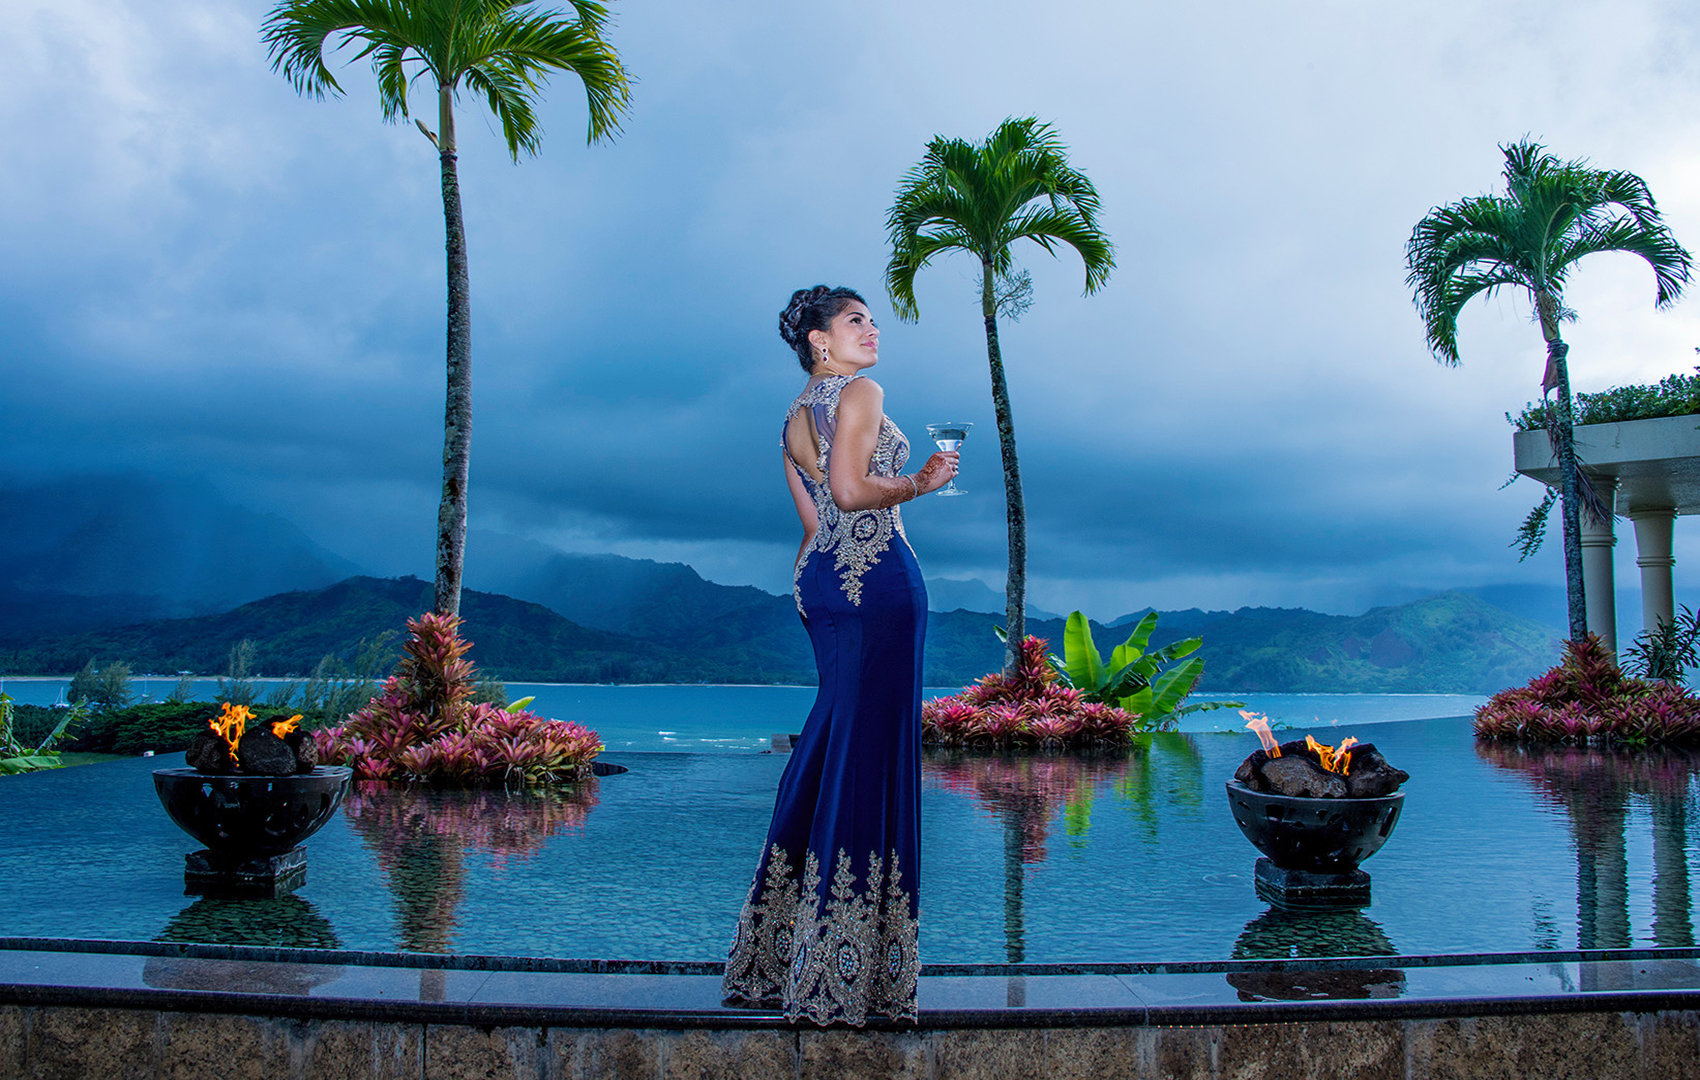 Family photographers on Maui | Kauai | Oahu | Big Island